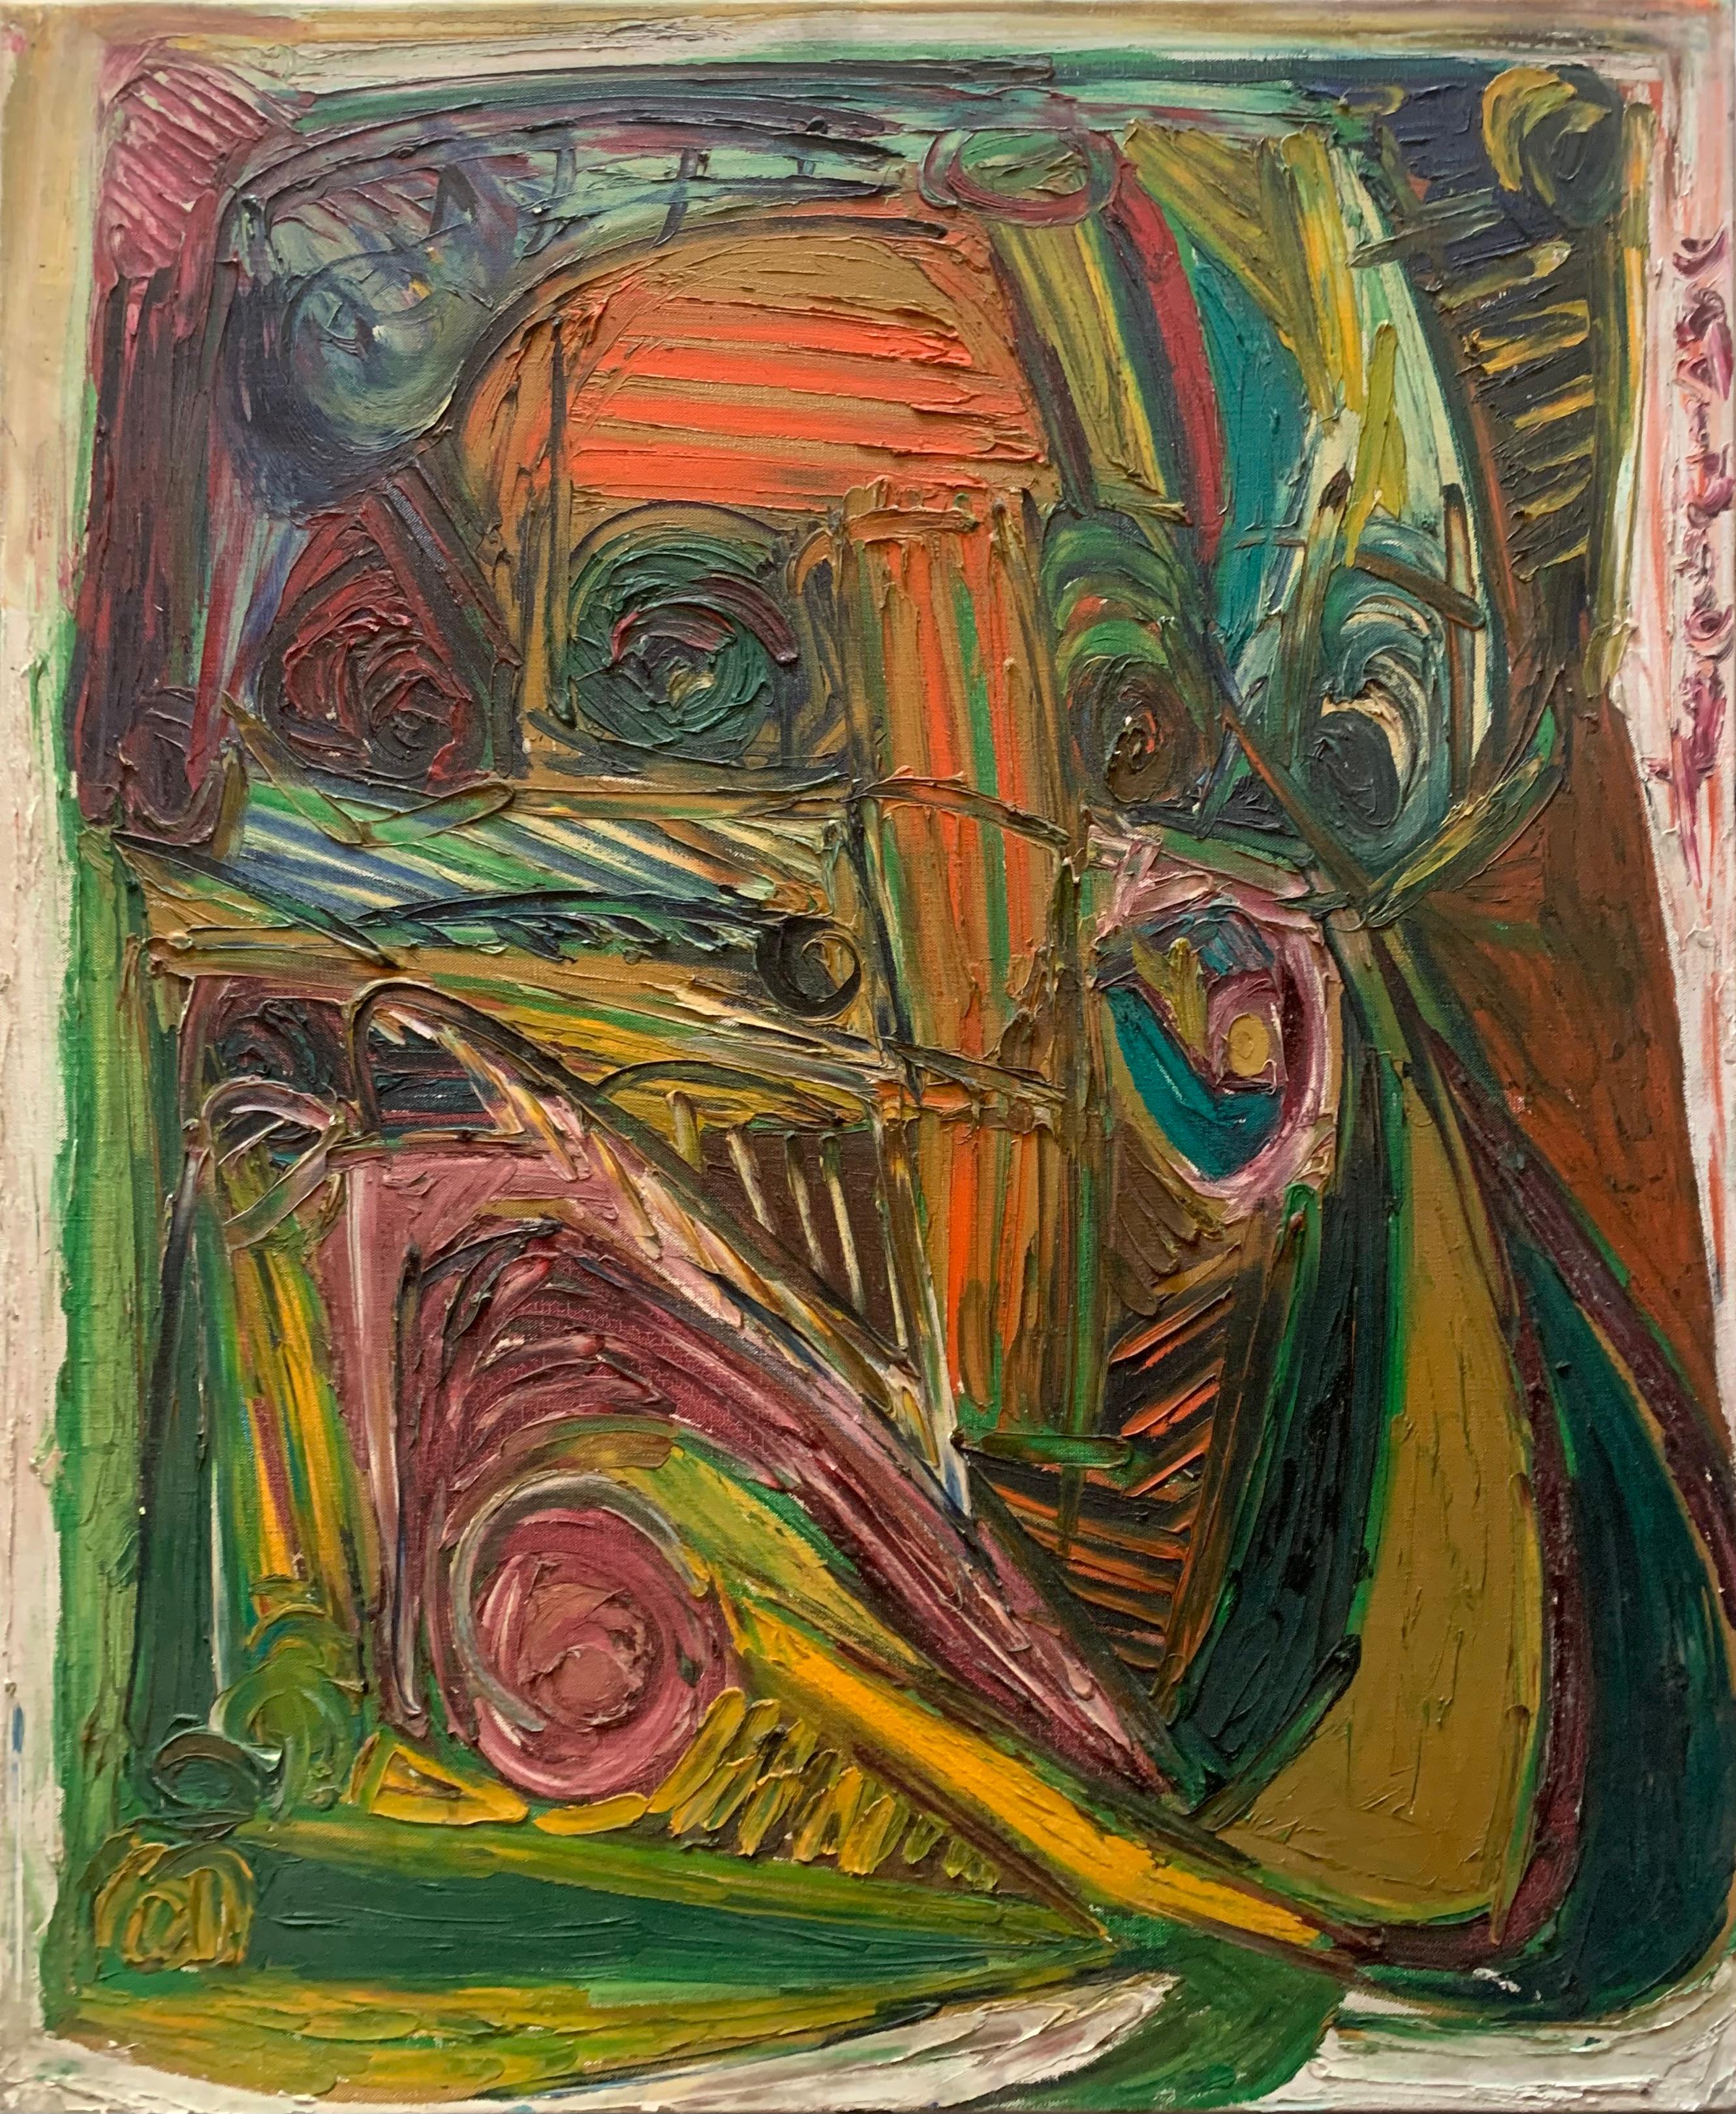 Abstract Painting Patrick Boudon - Un jeu géométrique de masques, d'yeux et de lignes. Expressionnisme d'après-guerre. 1970's.